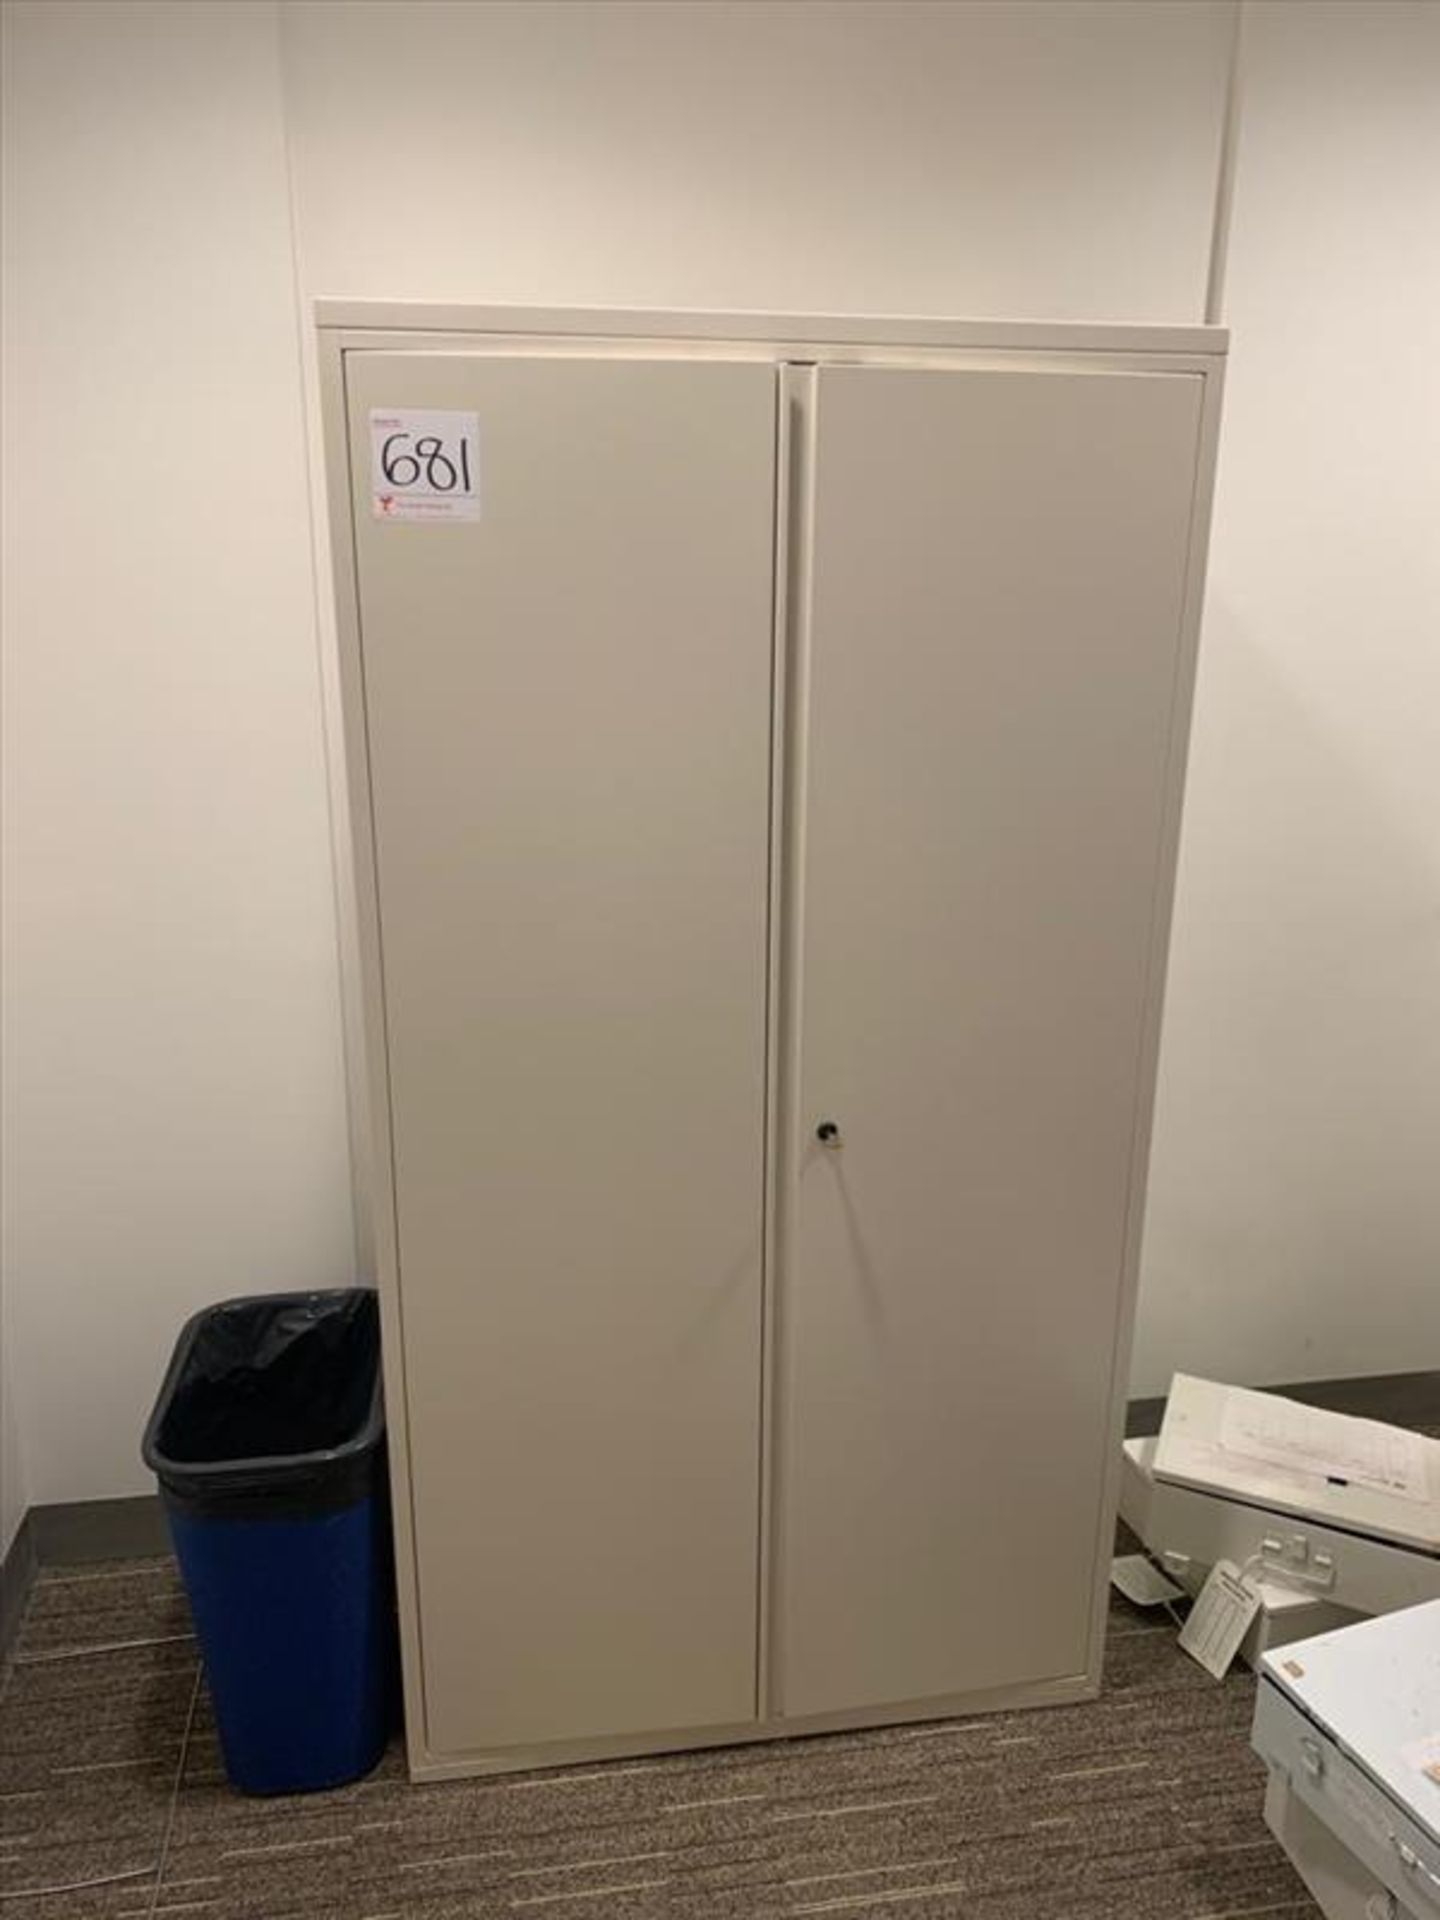 2-Door Storage Cabinet approx. 42 in. (Qty 1) (Floor 4) (Excluding Contents)